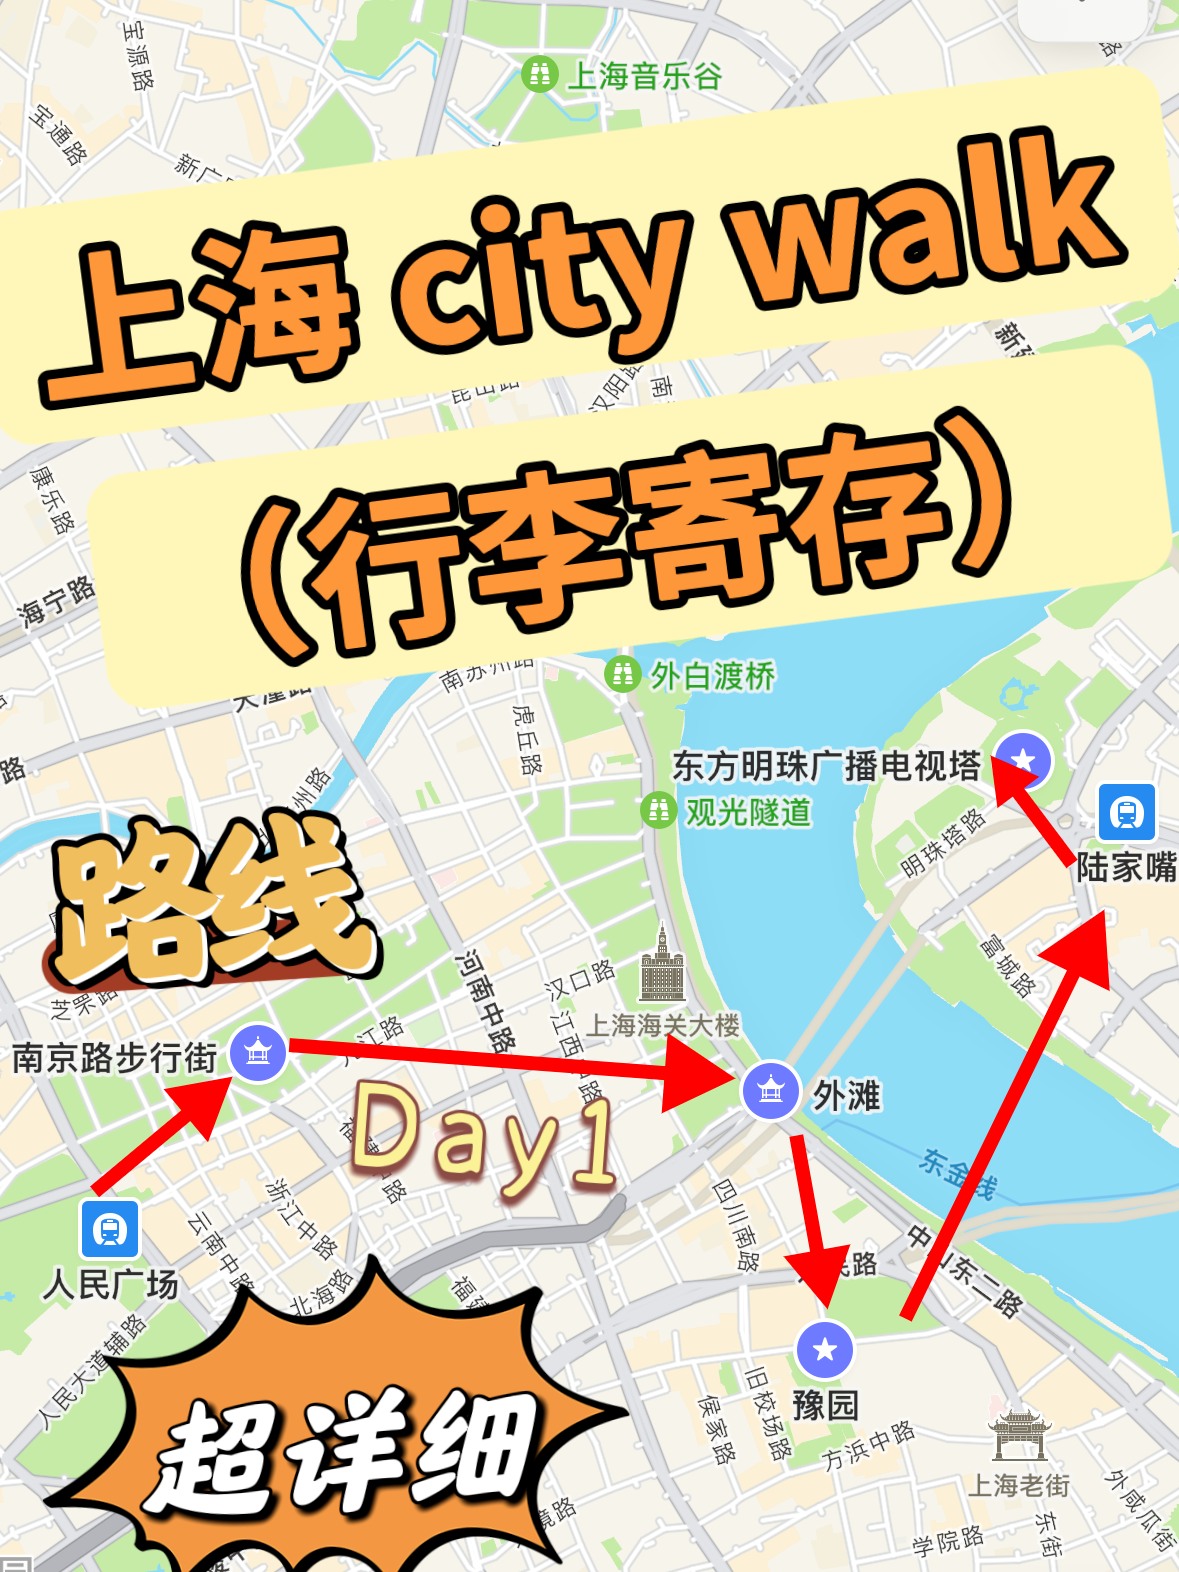 上海哪里可以寄存行李？上海City Walk路线、周末两日游